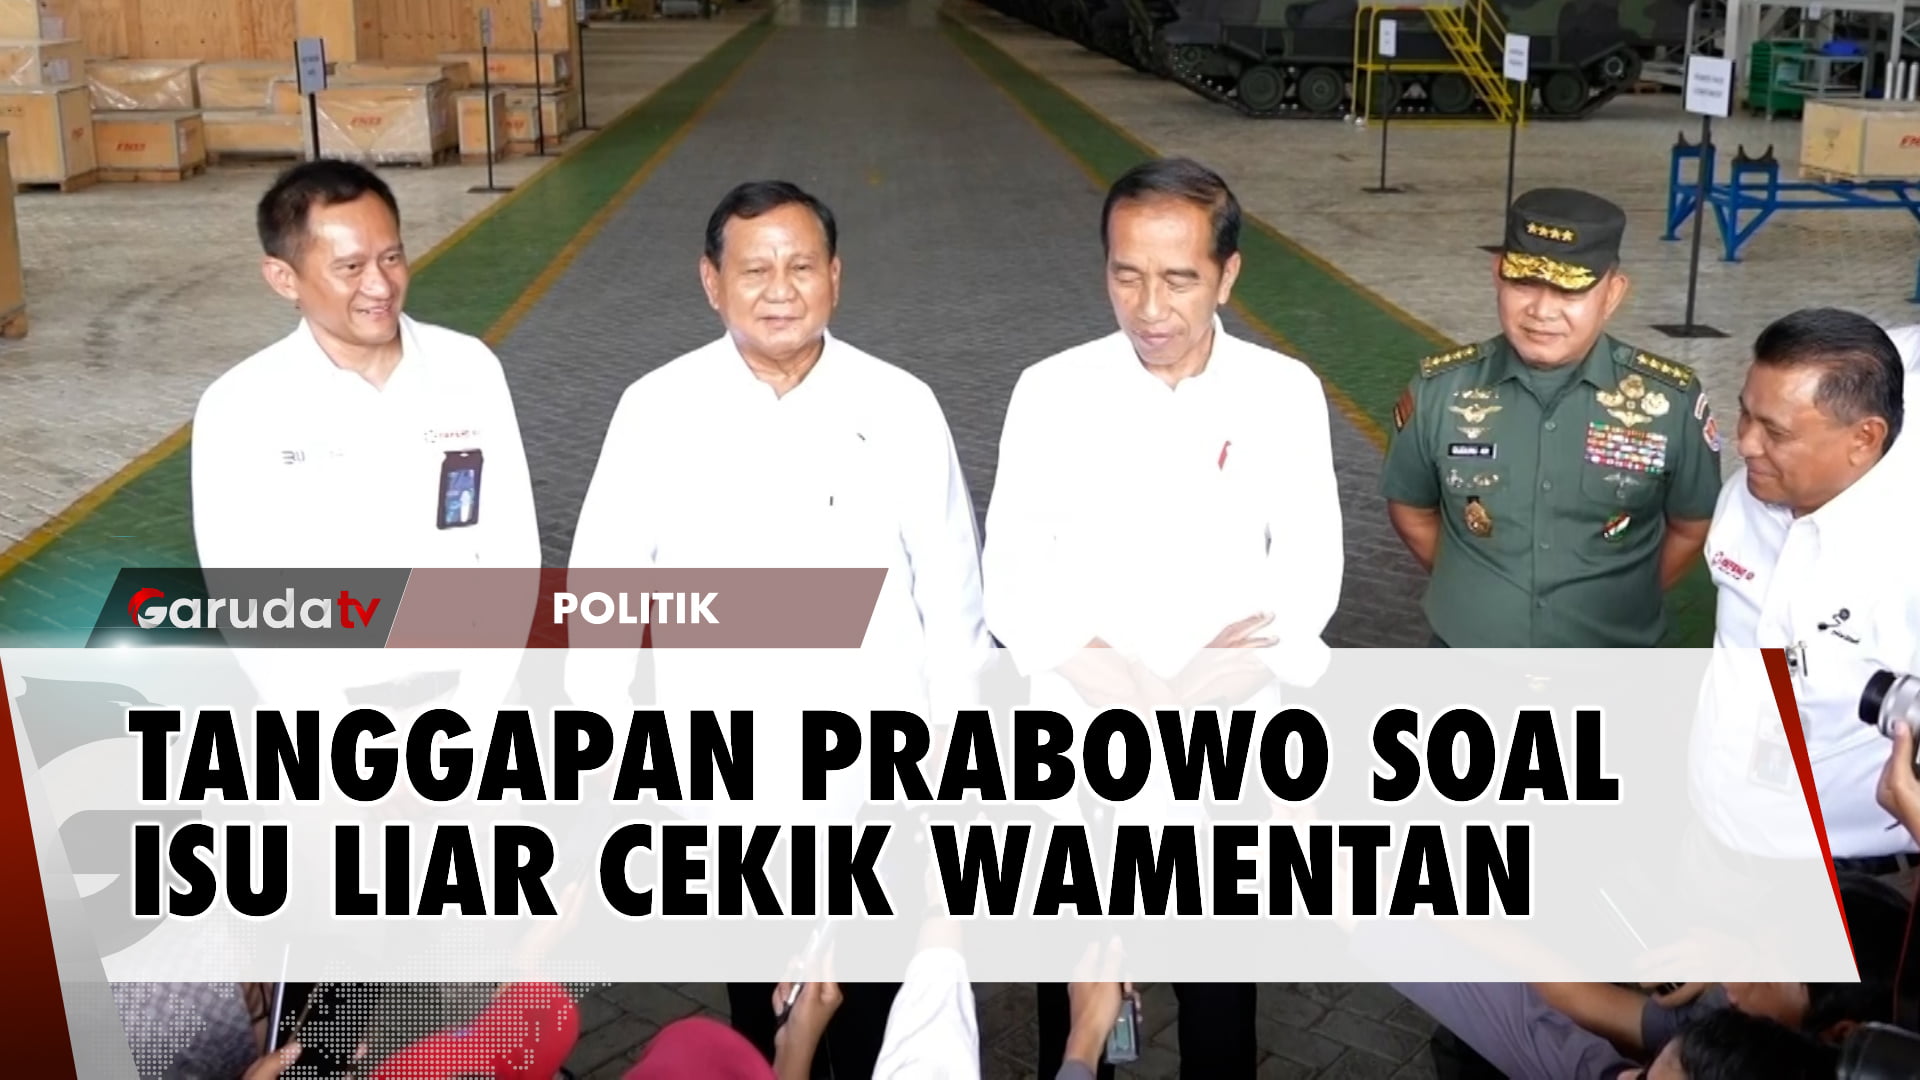 Jokowi Ikut Luruskan Hoax Prabowo Tampar dan Cekik Wamentan